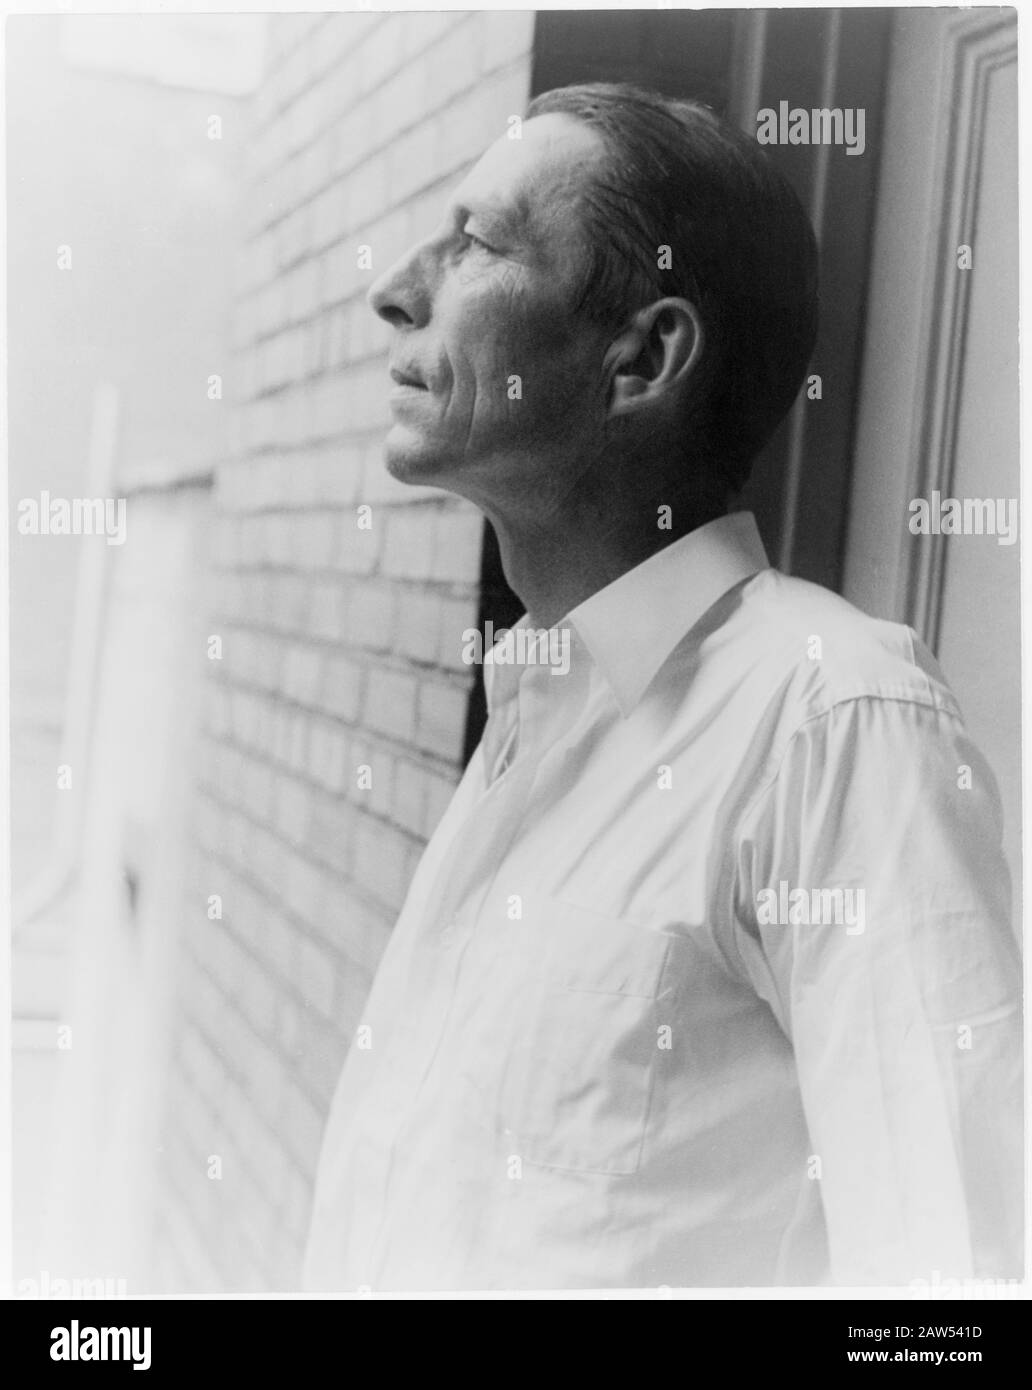 1937 , 6 luglio , New York , USA: Il poeta e scrittore americano ROBINSON JEFFERS ( 1887 – 1962 ) . Foto Di Carl Van Vechten . - ritratto - ritratto Foto Stock